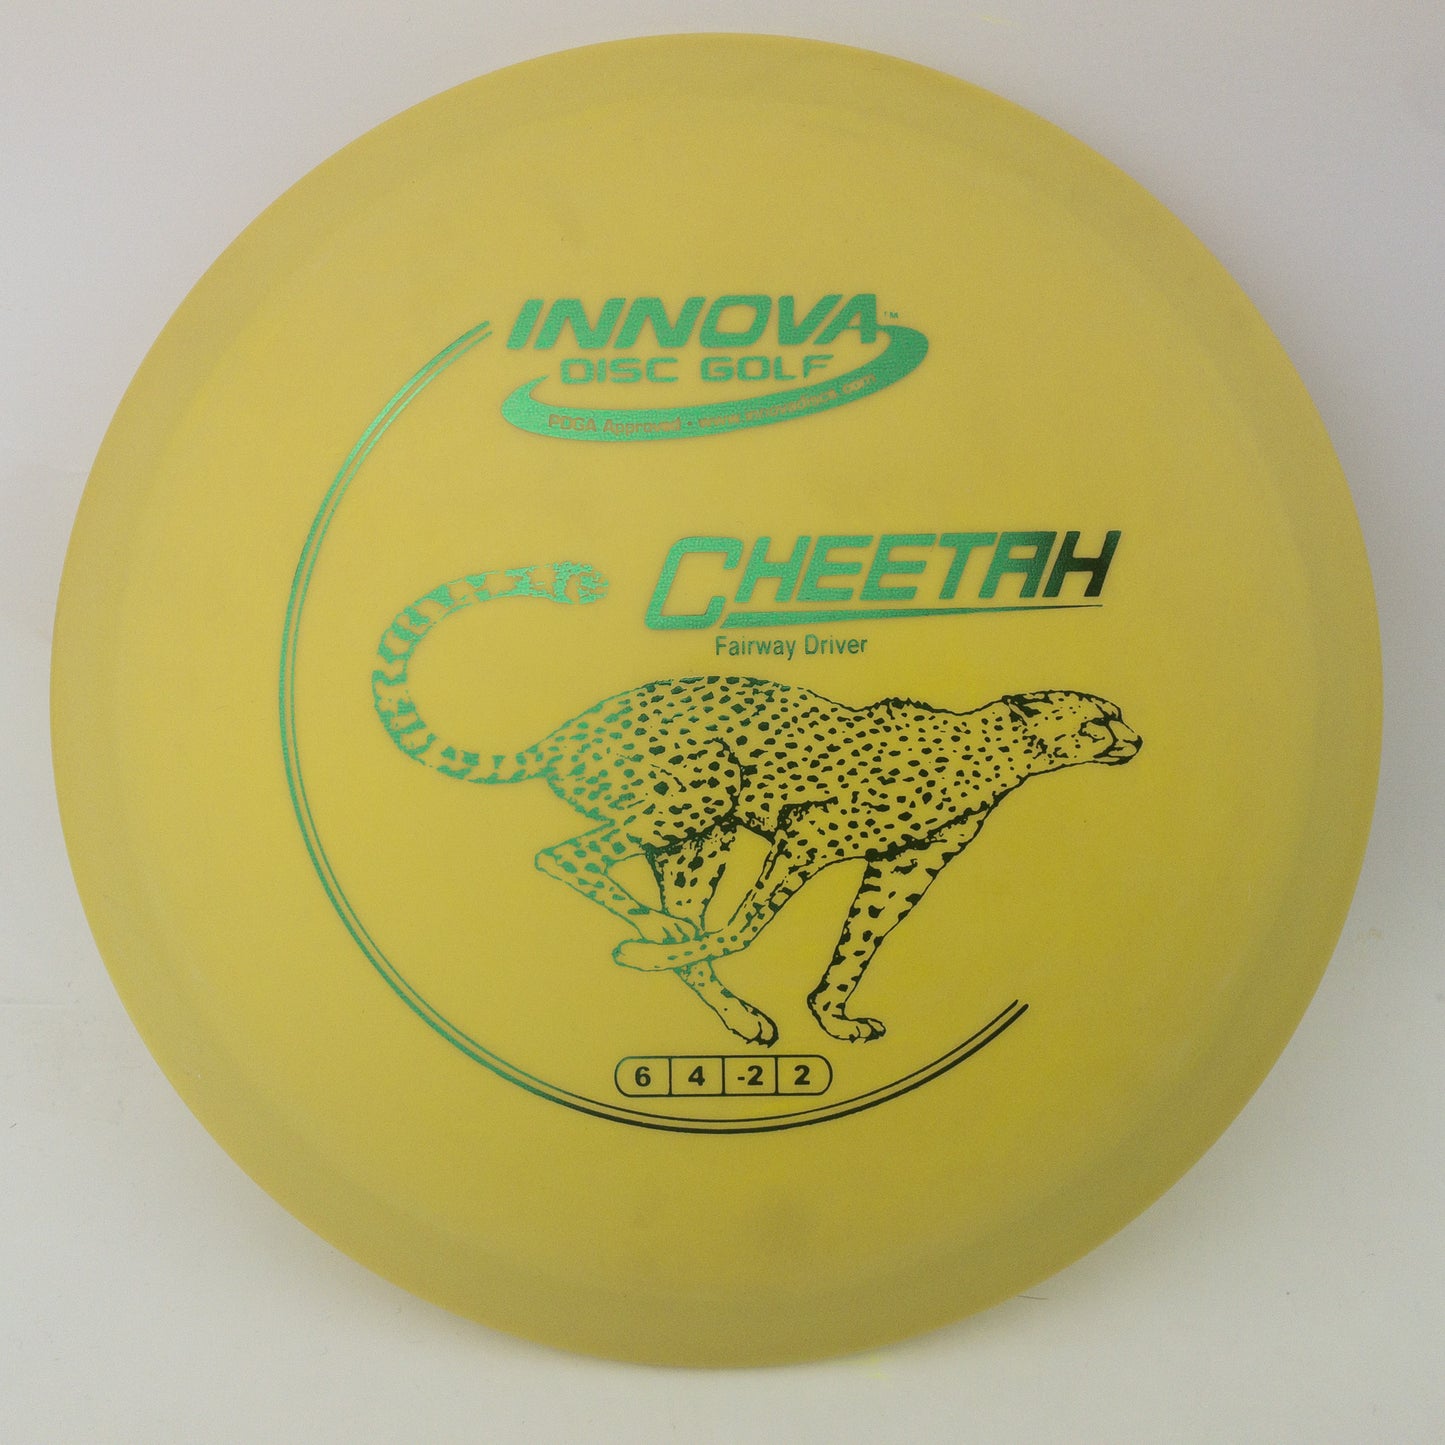 Innova DX Cheetah